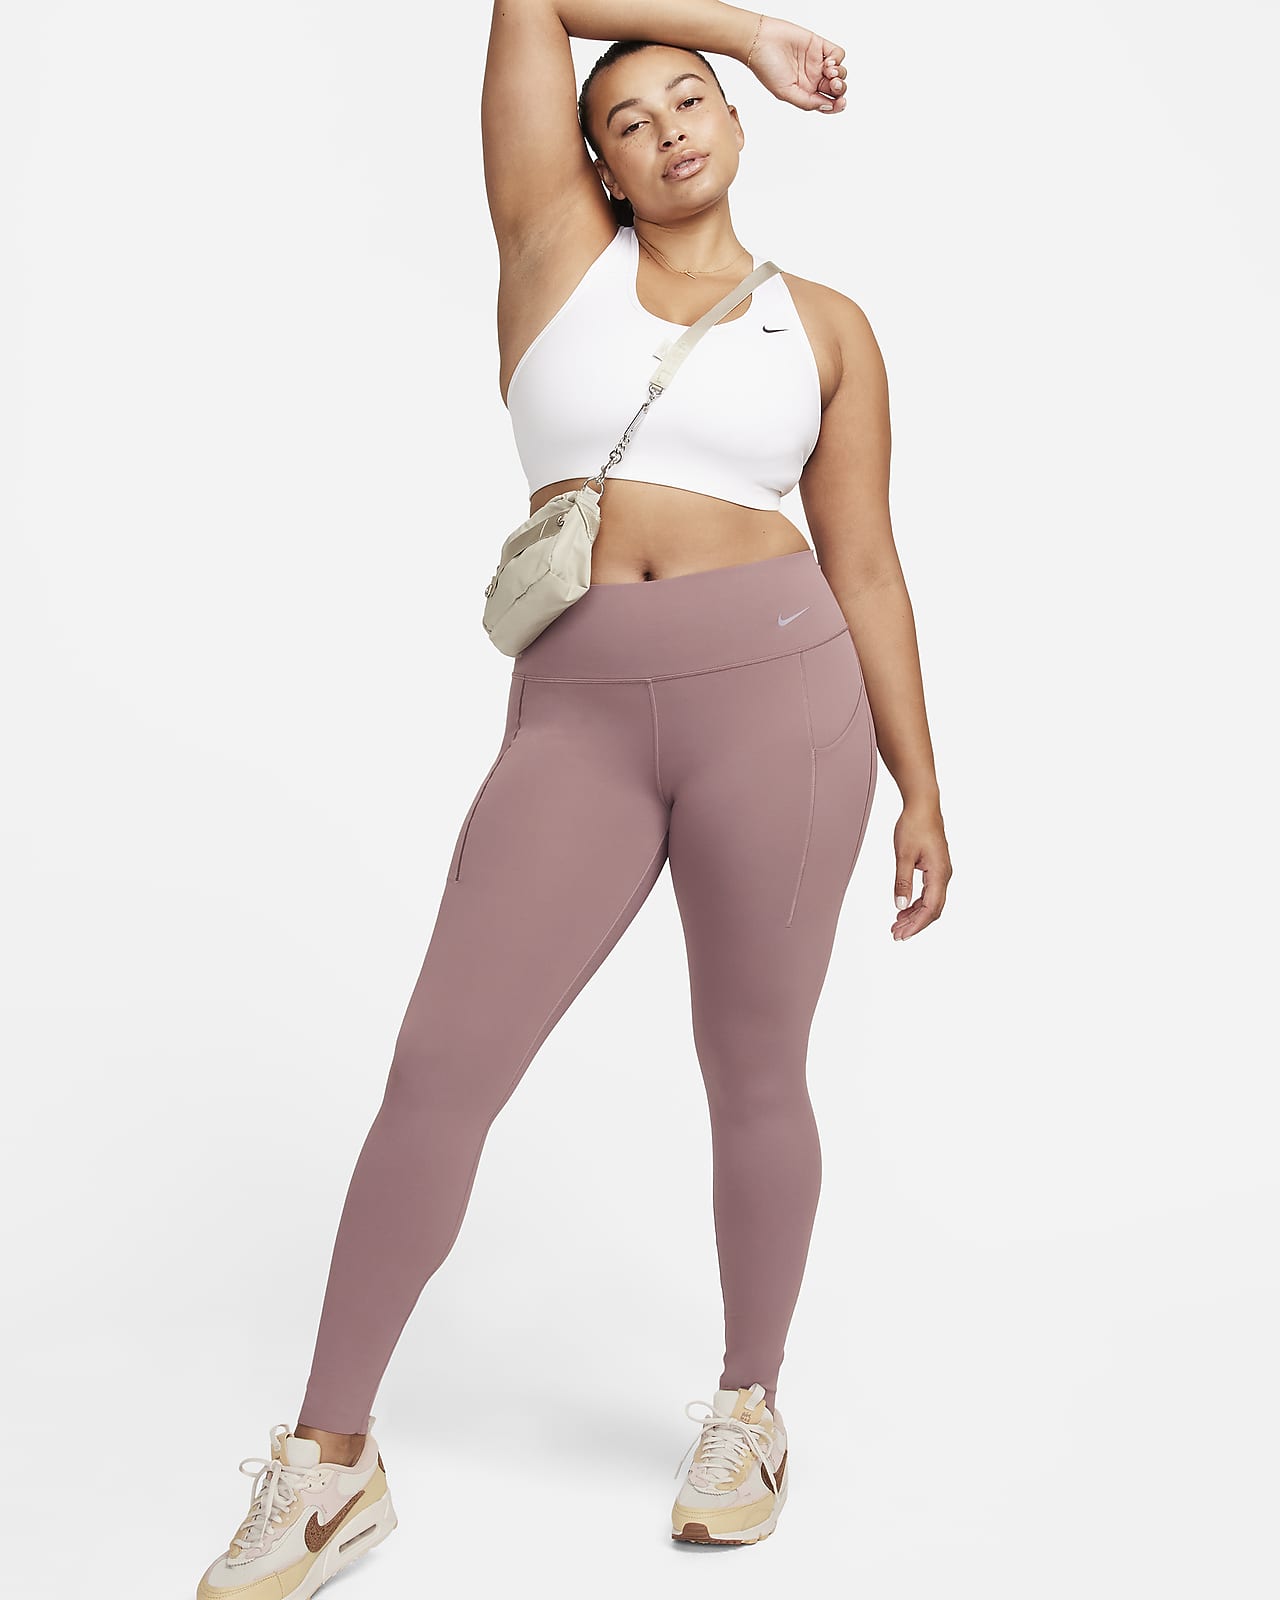 Nike Universa Leggings de longitud completa, talle medio y sujeción media con bolsillos - Mujer